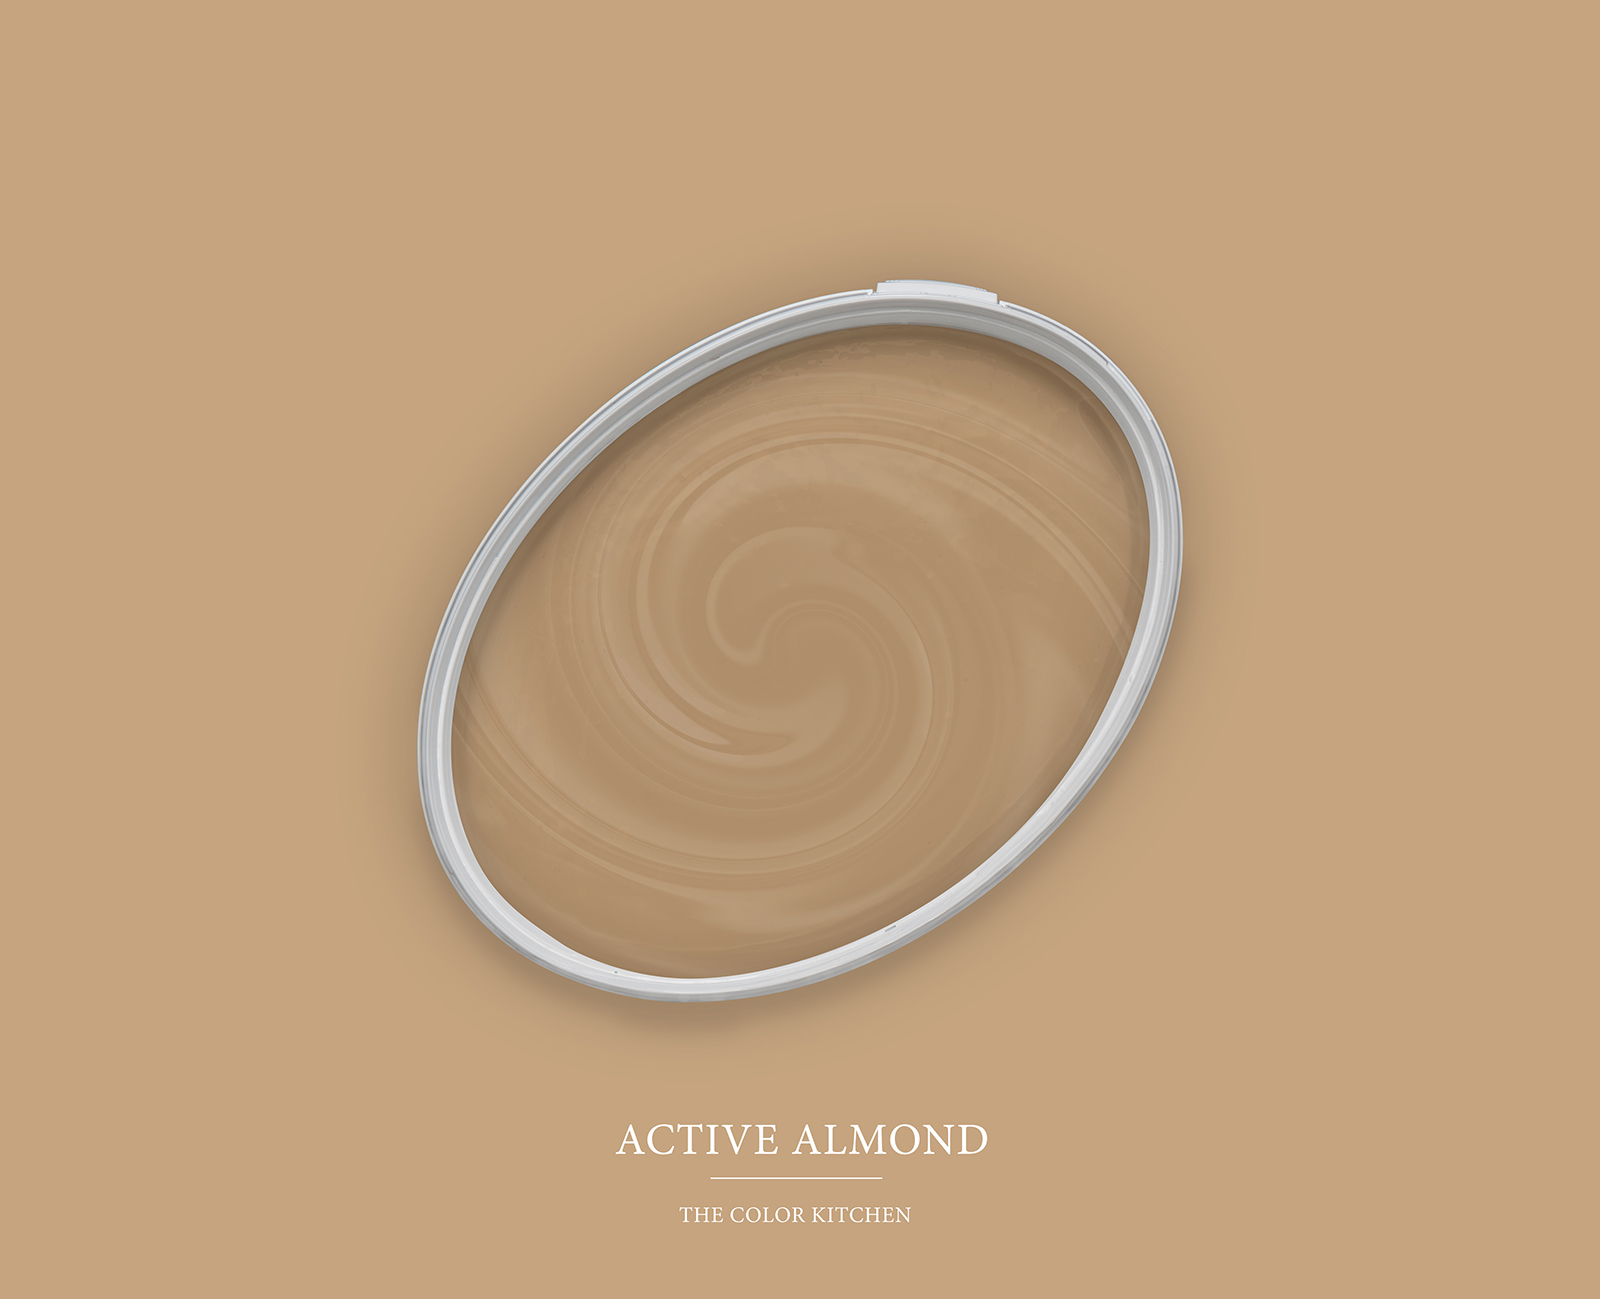         Wandfarbe in gemütlichem Beigebraun »Active Almond« TCK6004 – 2,5 Liter
    